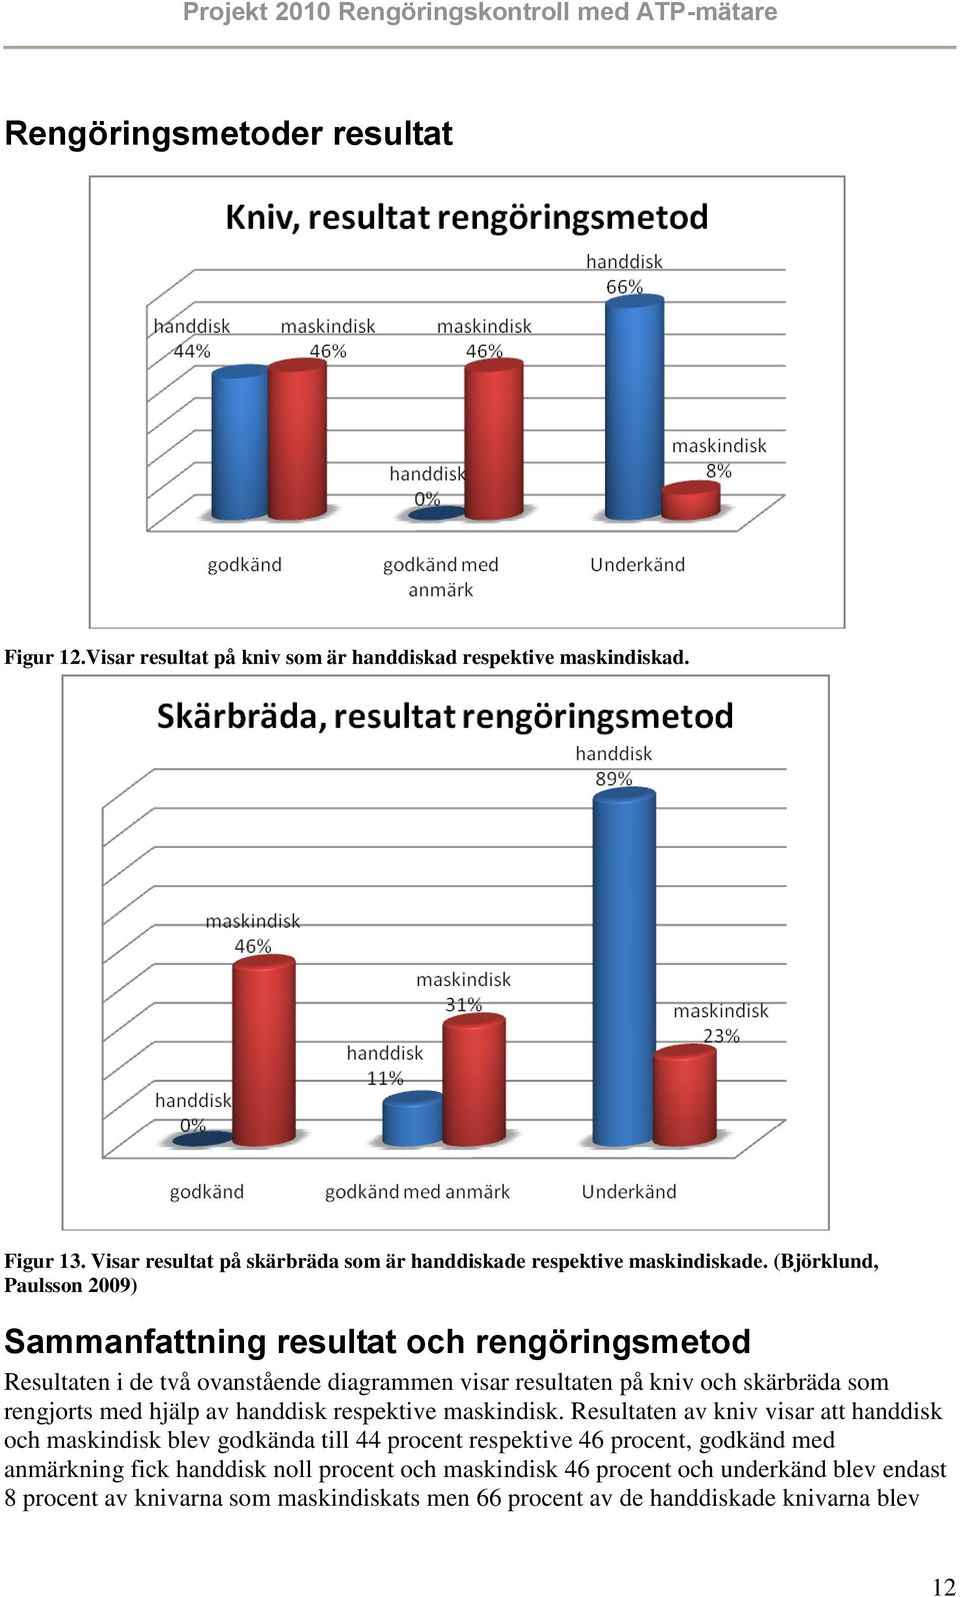 (Björklund, Paulsson 2009) Sammanfattning resultat och rengöringsmetod Resultaten i de två ovanstående diagrammen visar resultaten på kniv och skärbräda som rengjorts med